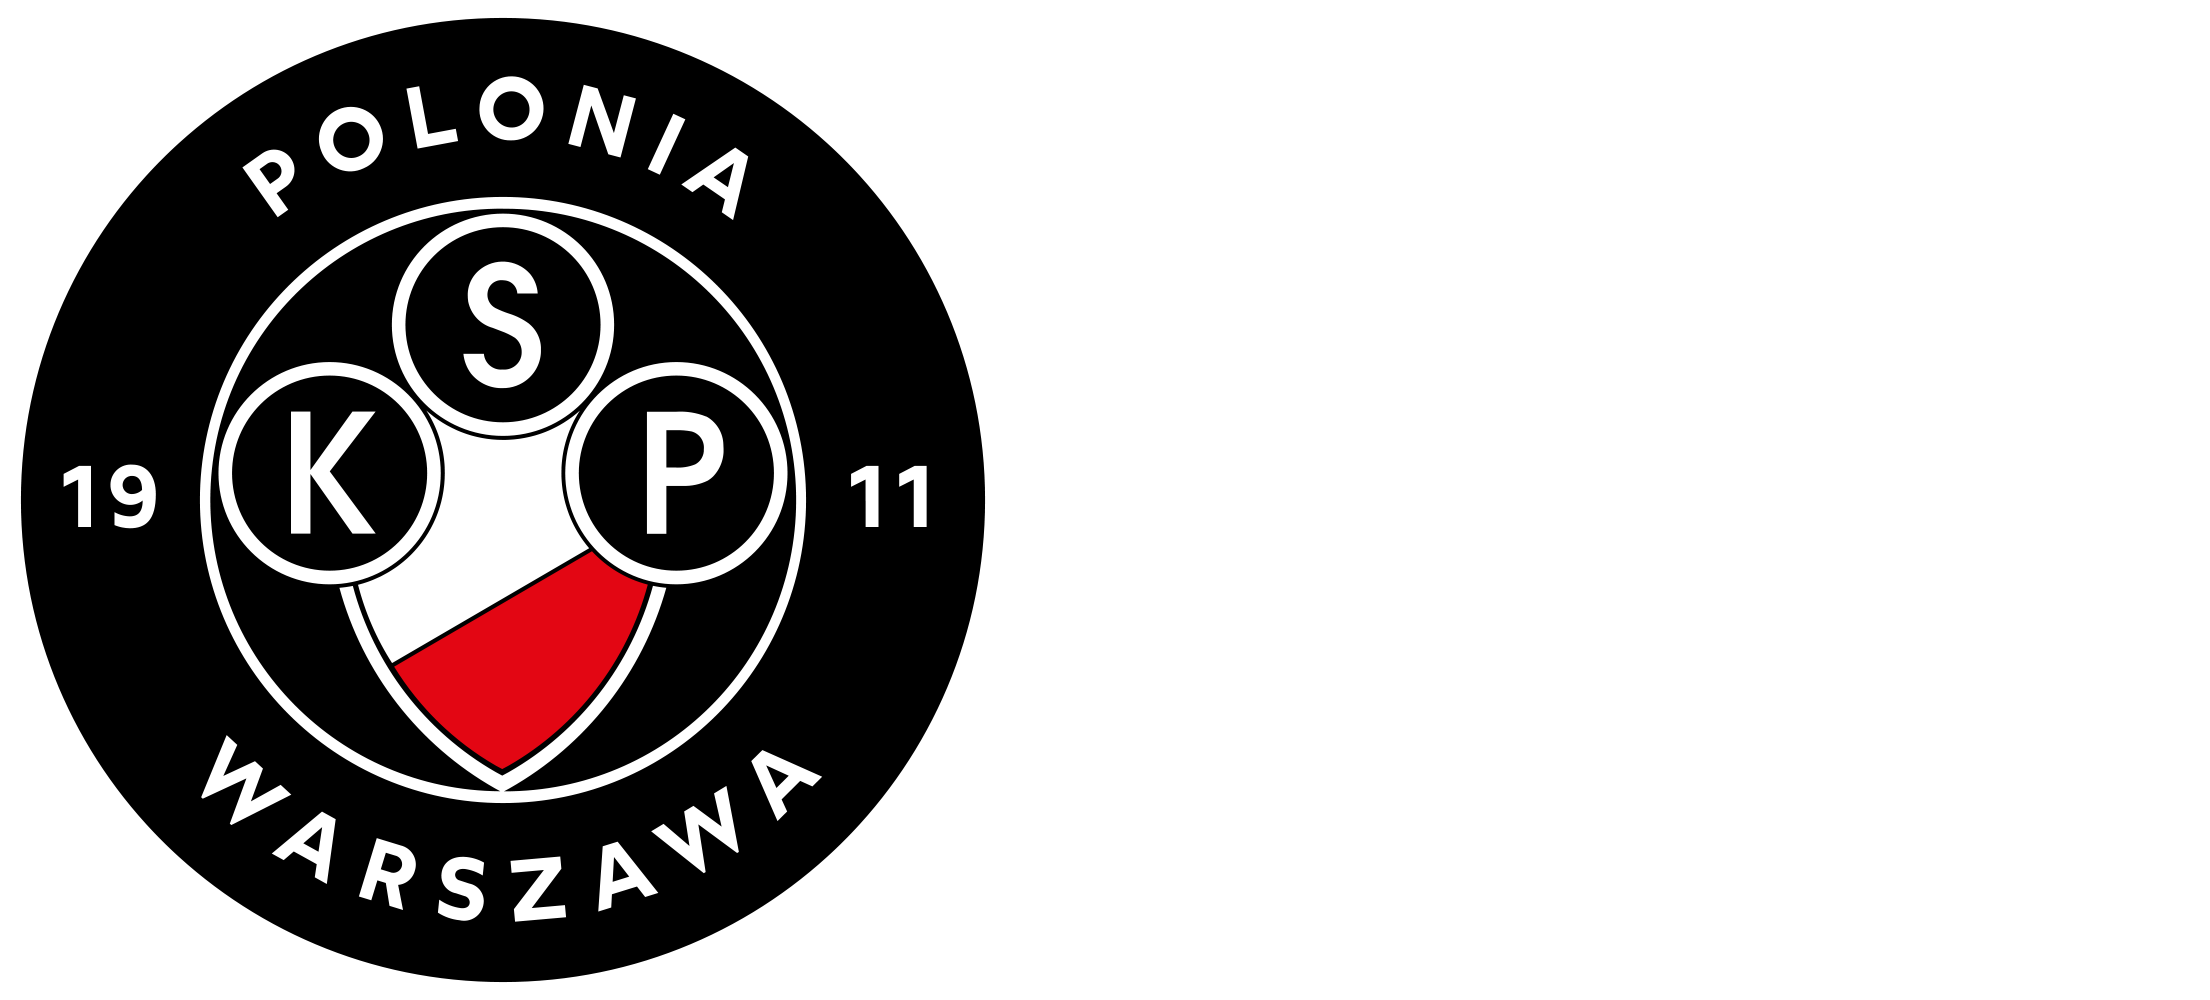 Oficjalny sklep Polonia Warszawa